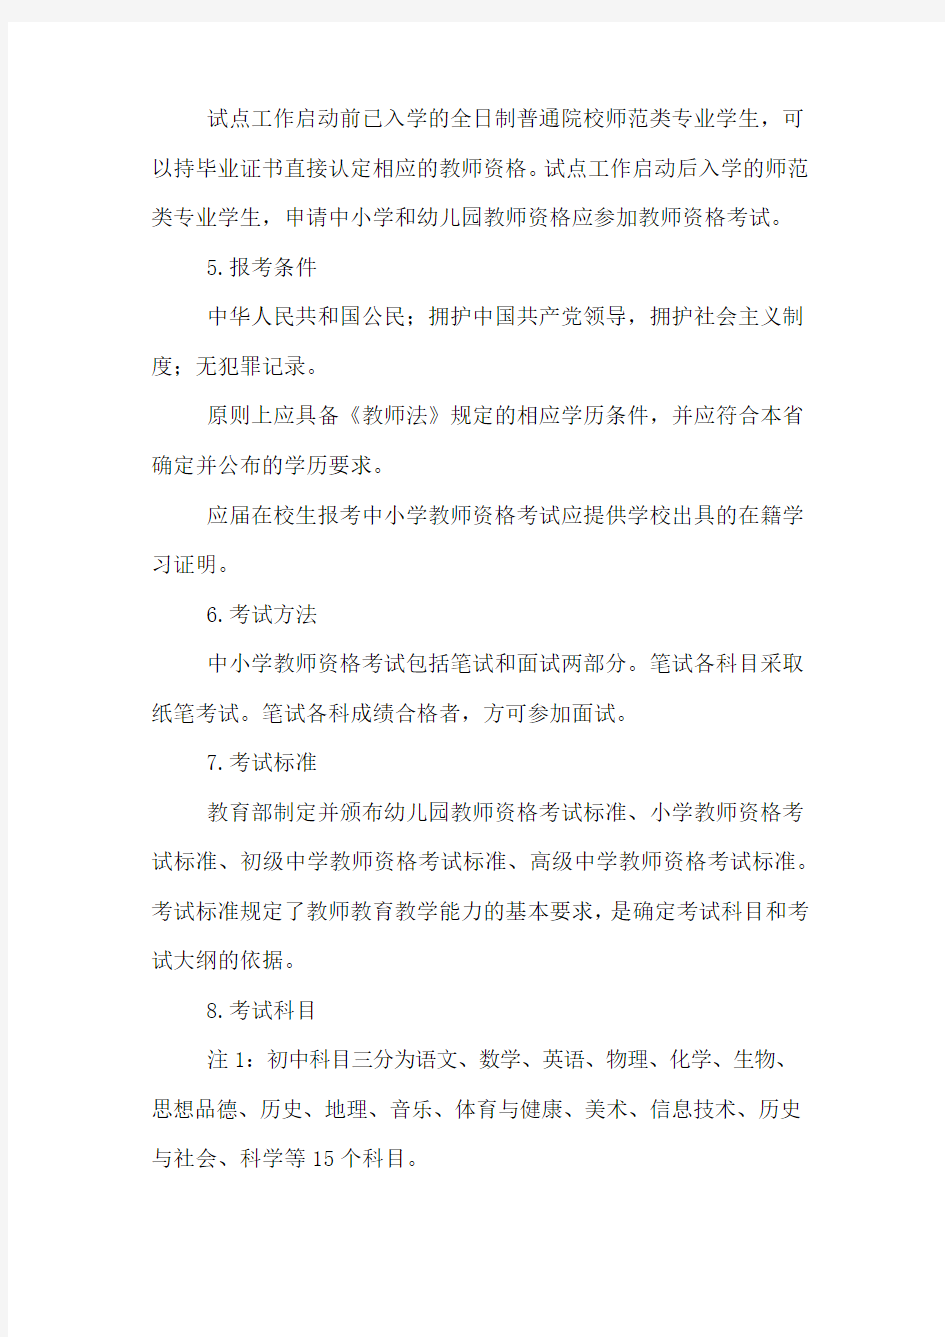 上海小学教师资格证考试流程